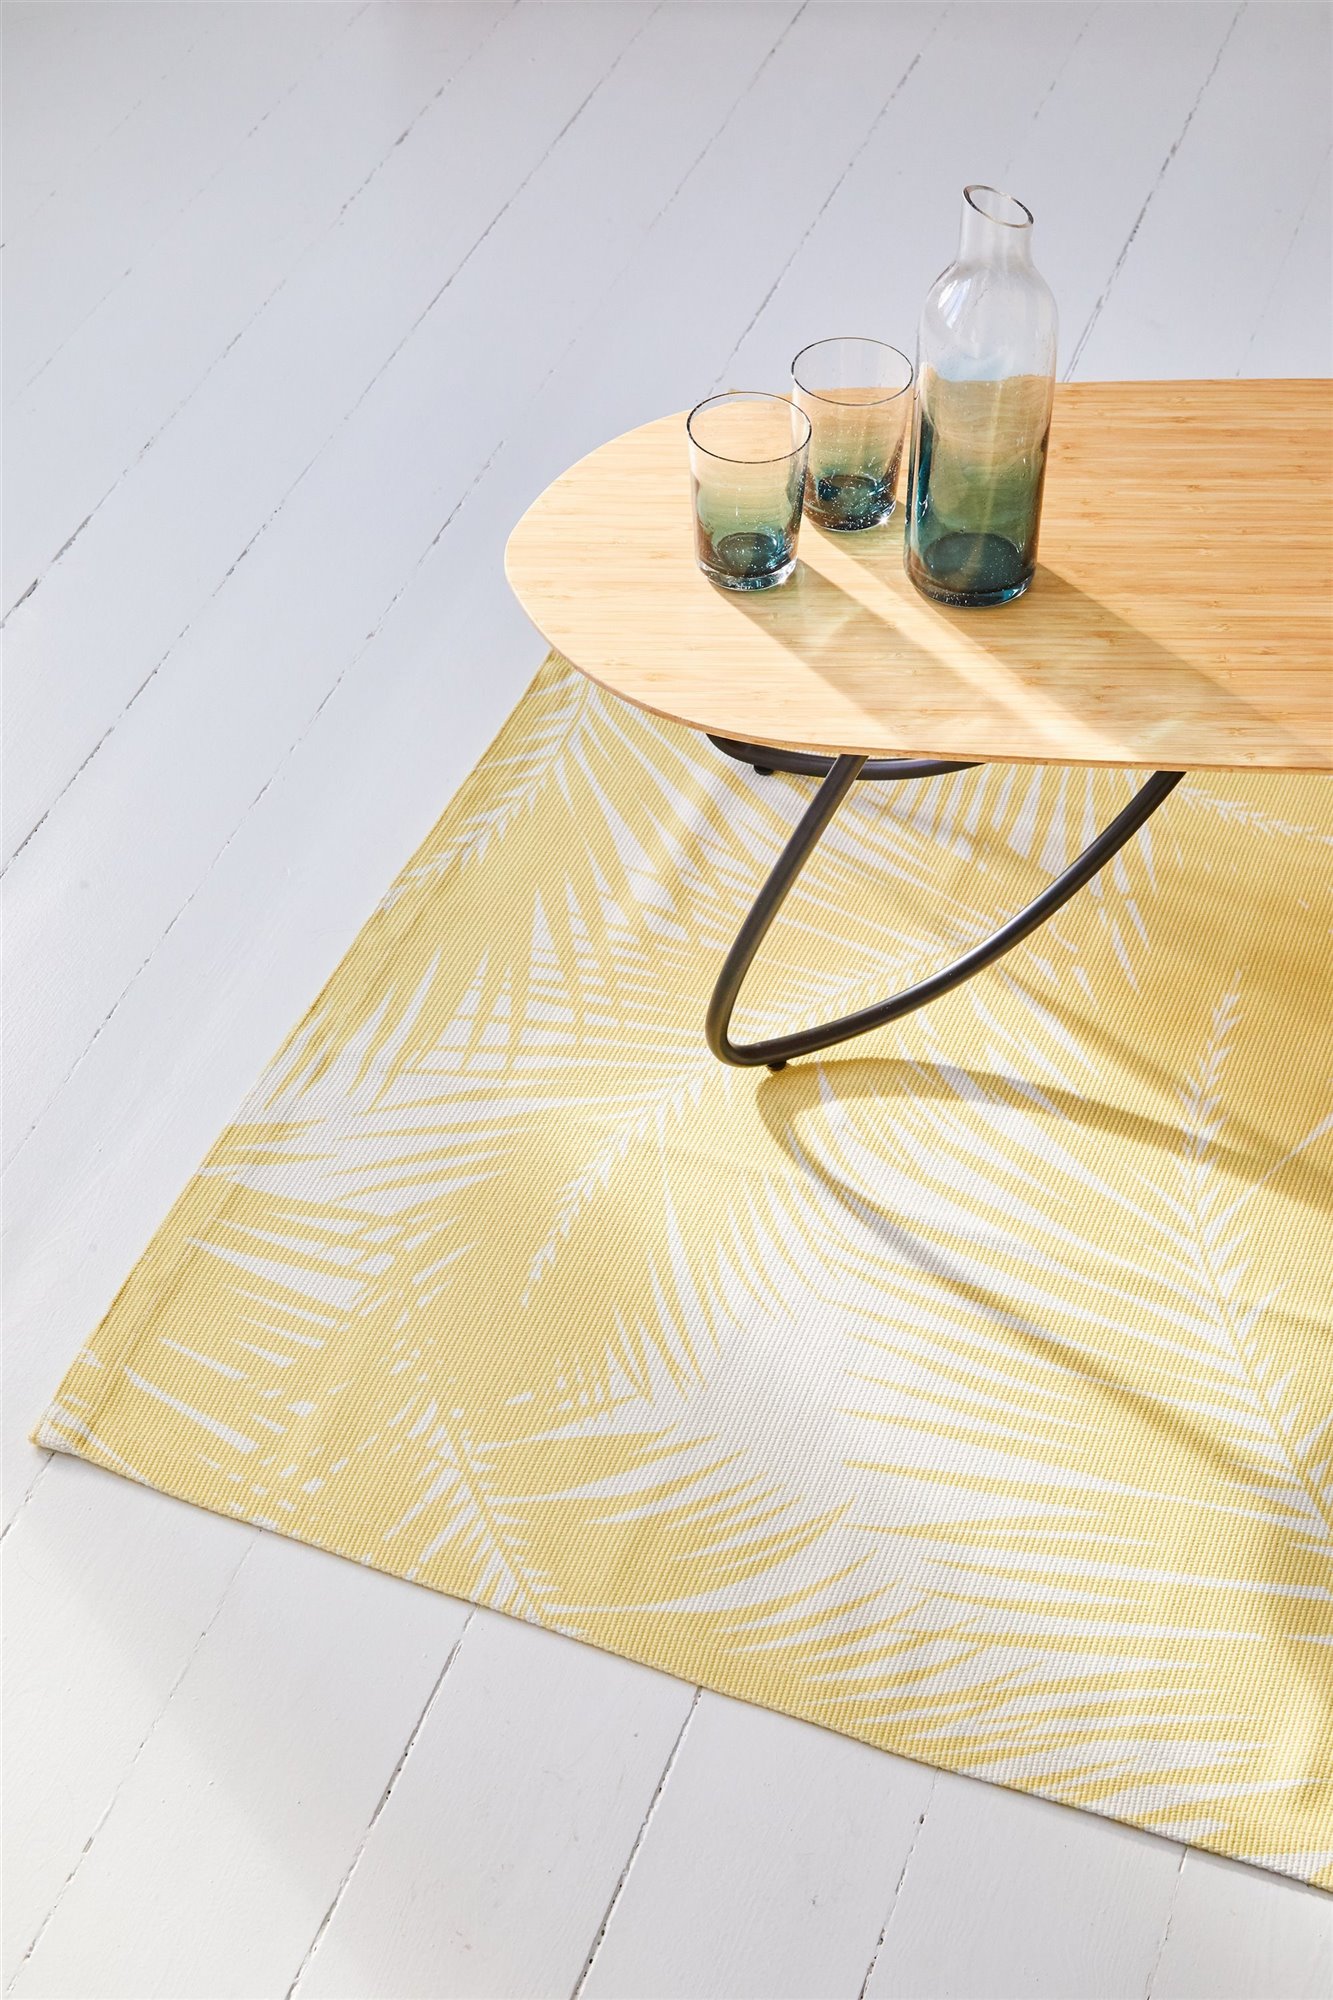 Ikea colaboración surf KÅSEBERGA mesa con vasos jarra y alfombra amarilla